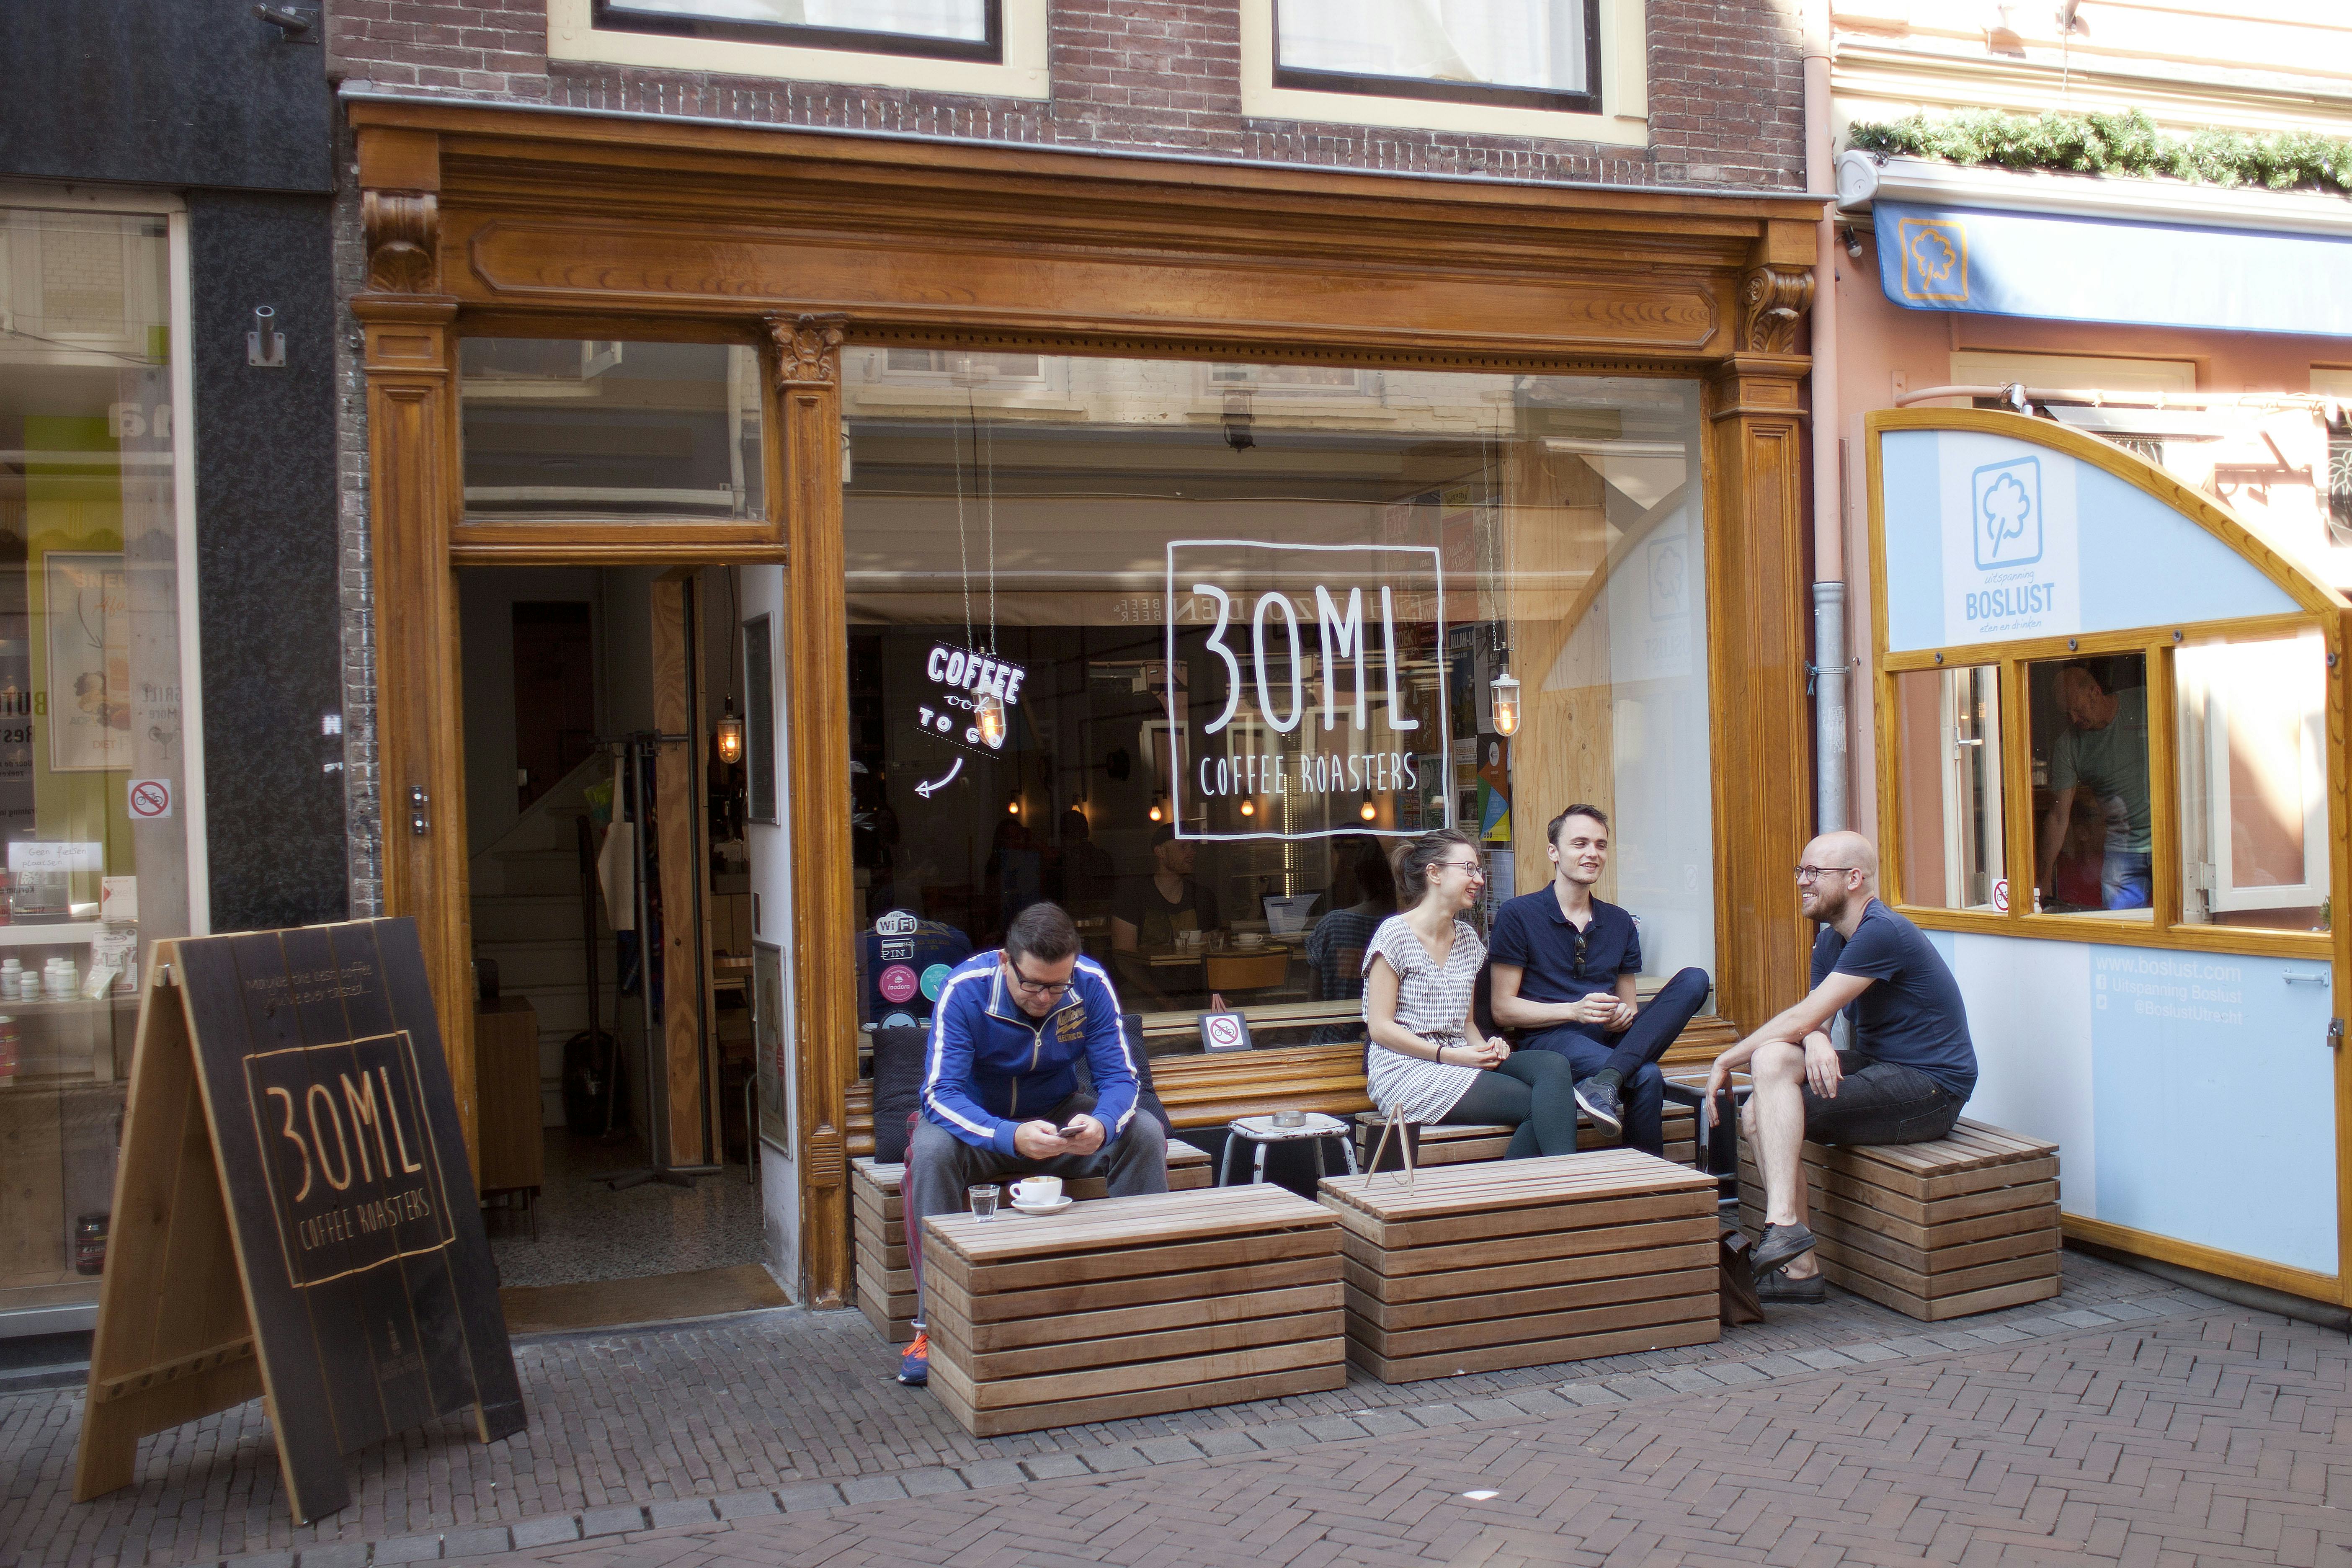 Utrechtse koffiebar 30ml verhuist en breidt uit